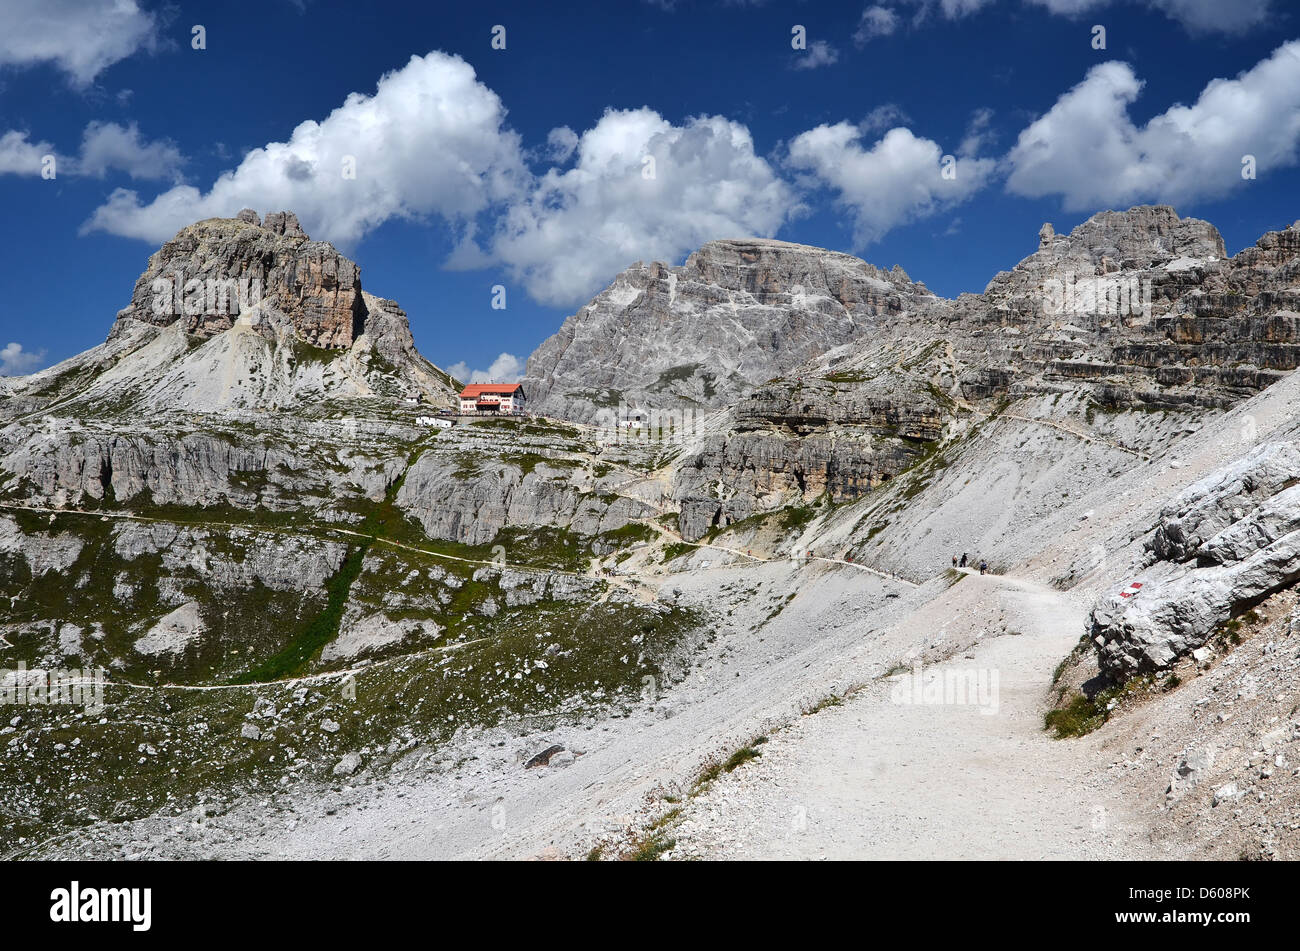 Drei Zinnen (Tre Cime) capanna e le montagne delle Dolomiti. Paesaggio di montagna nelle Dolomiti, Italia settentrionale, cresta delle Alpi in Europa Foto Stock